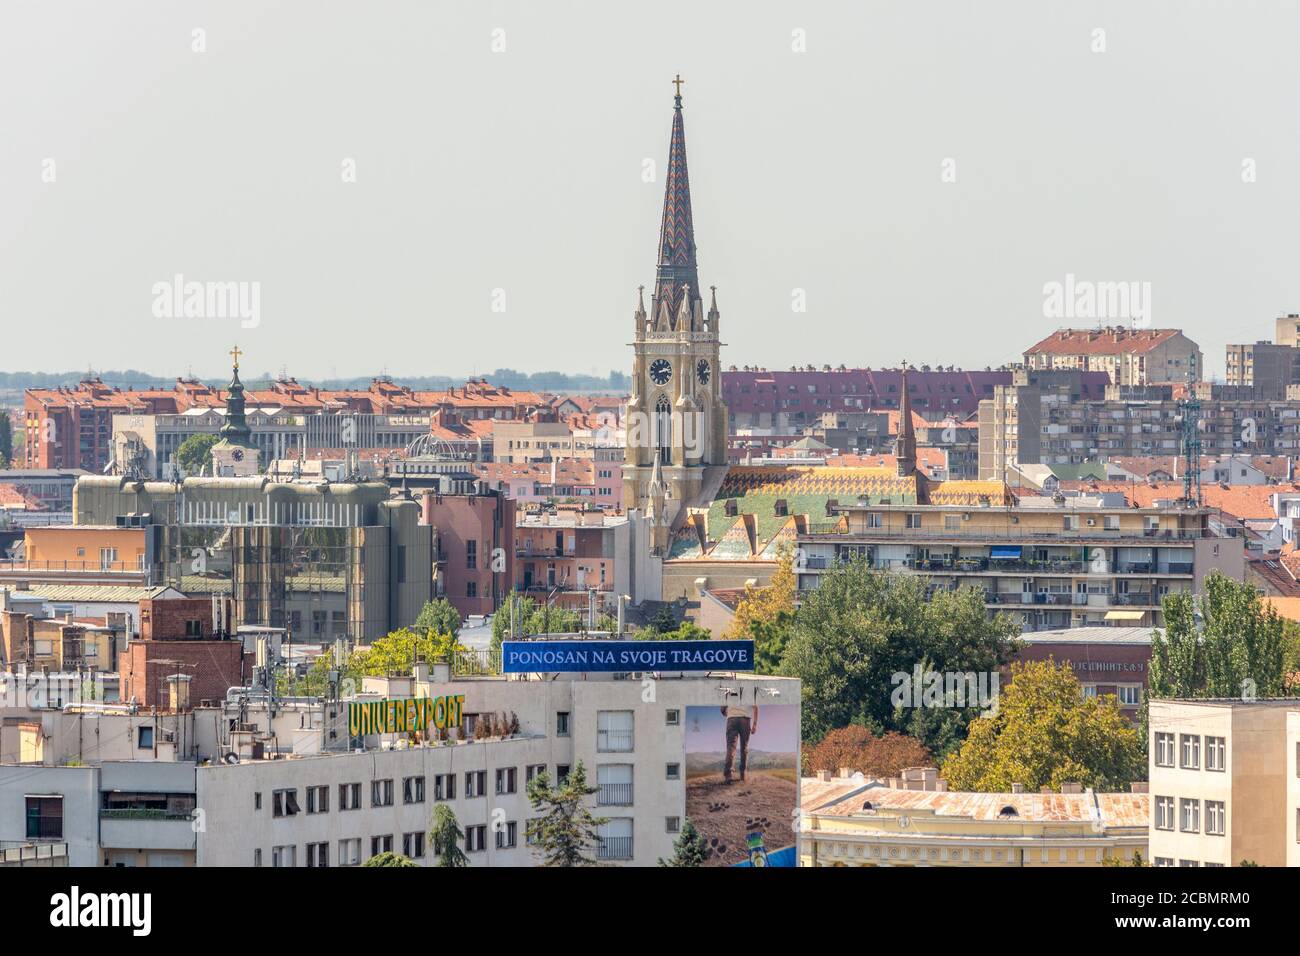 Novi Sad / Serbie - 16 août 2017 : paysage urbain de Novi Sad, deuxième plus grande ville de Serbie et capitale de la province autonome de Voïvodine Banque D'Images